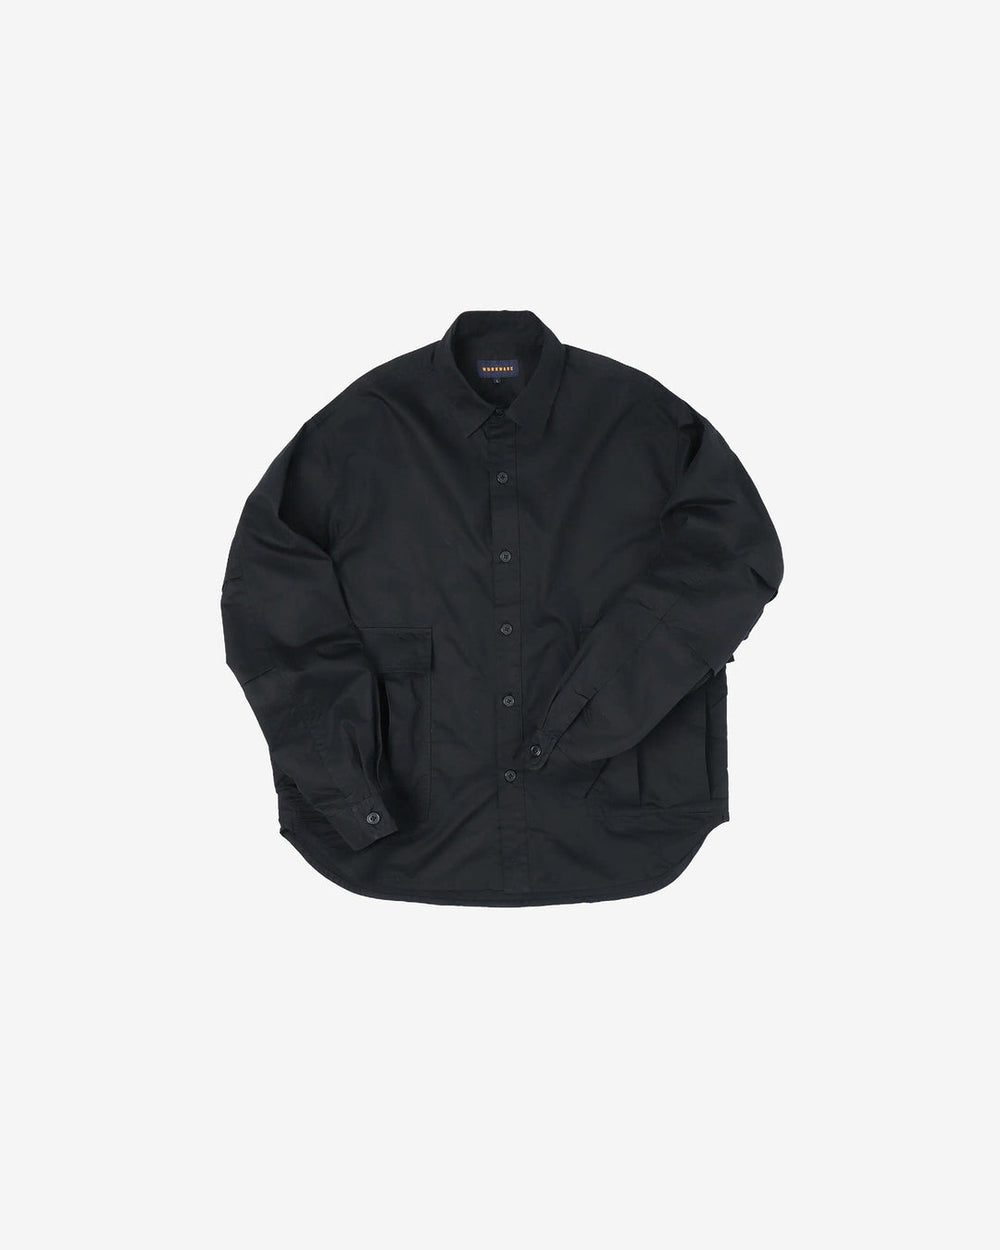 Workware - M51 Shirt #600 - Black